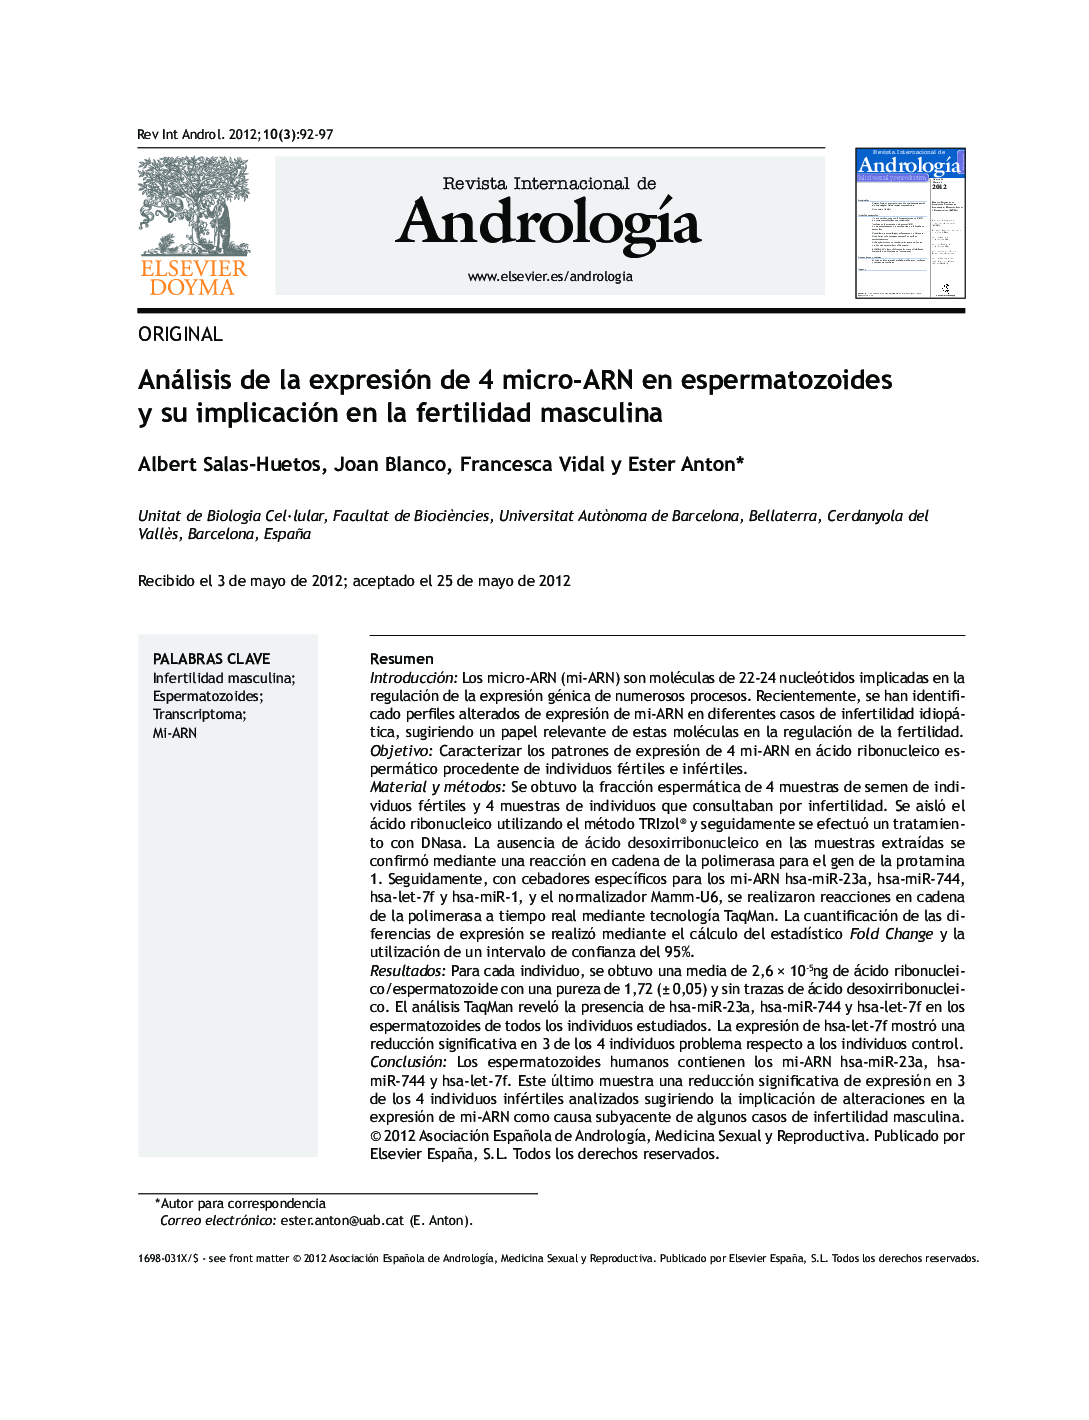 Análisis de la expresión de 4 micro-ARN en espermatozoides y su implicación en la fertilidad masculina